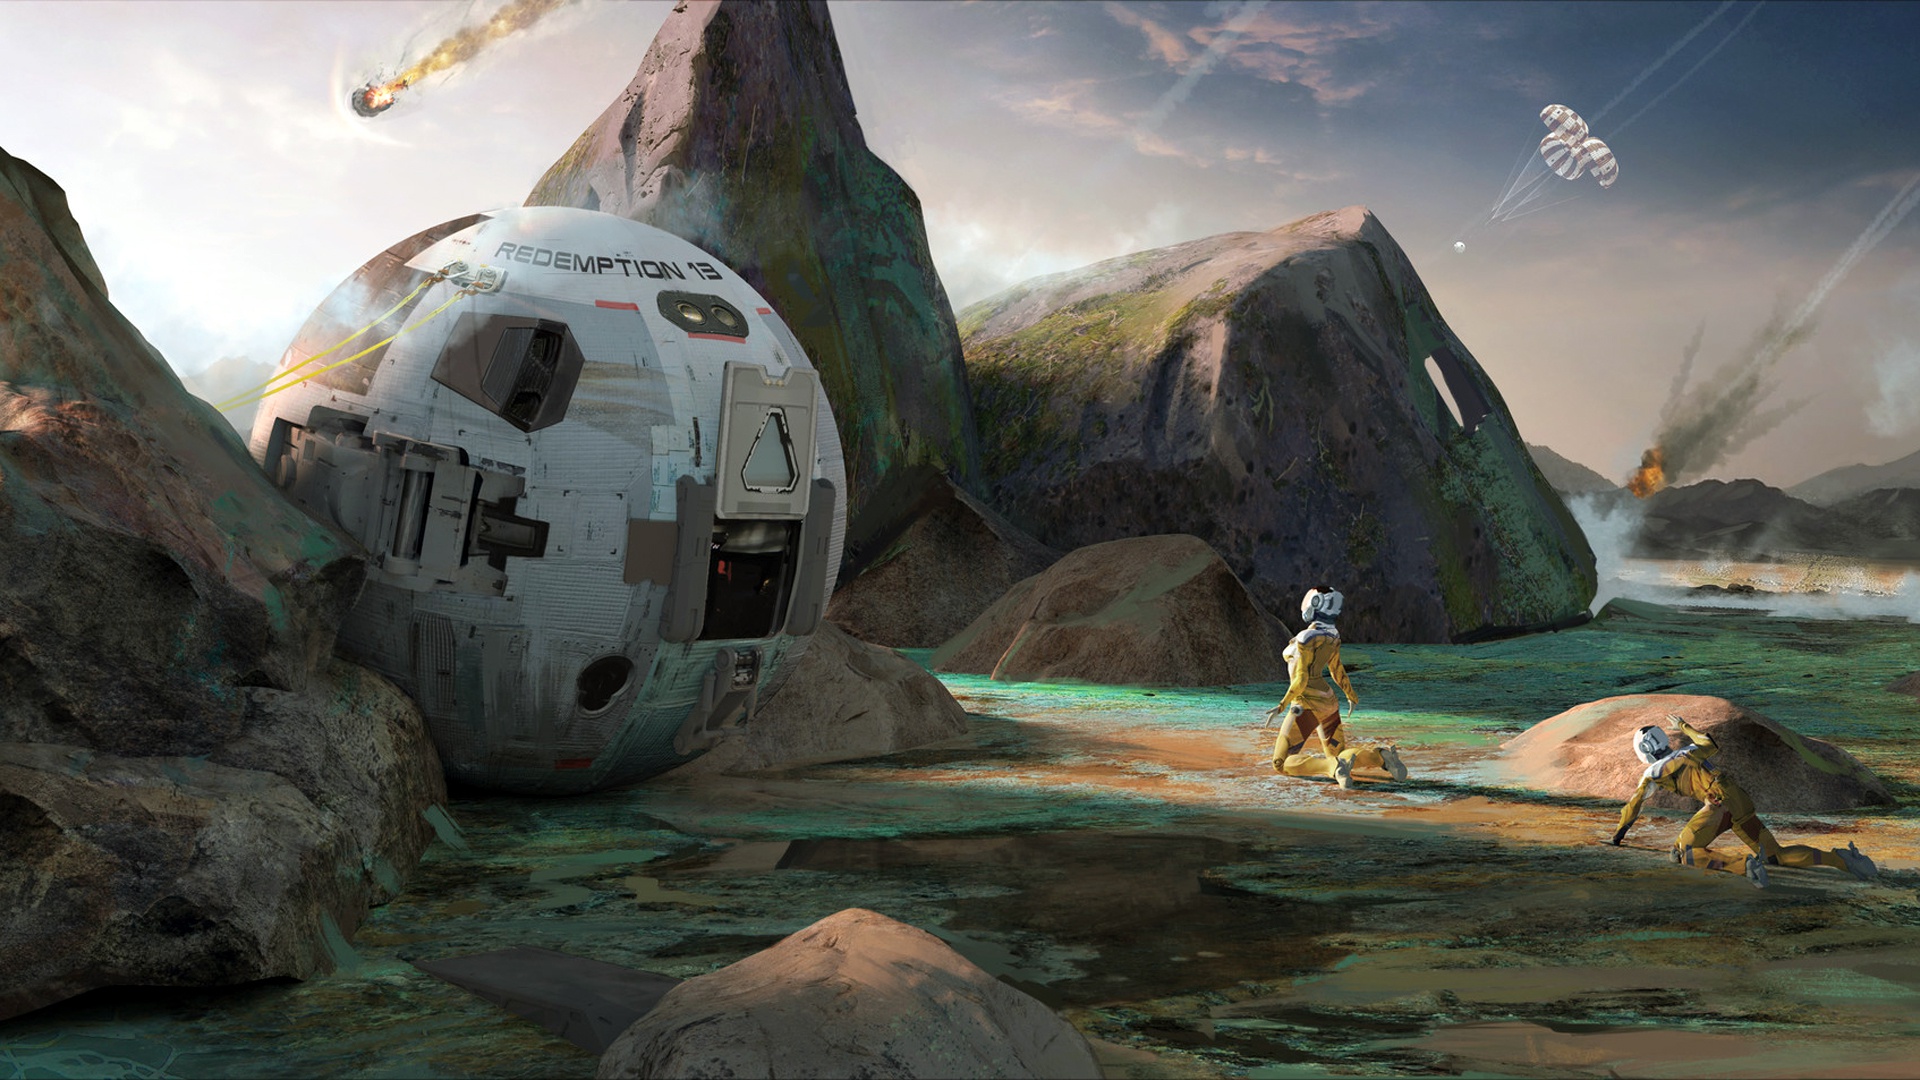 Экспедиция на планету. Спасательная капсула Sci Fi Art. Космический корабль на планете. Инопланетные пейзажи. Фантастические космические корабли.